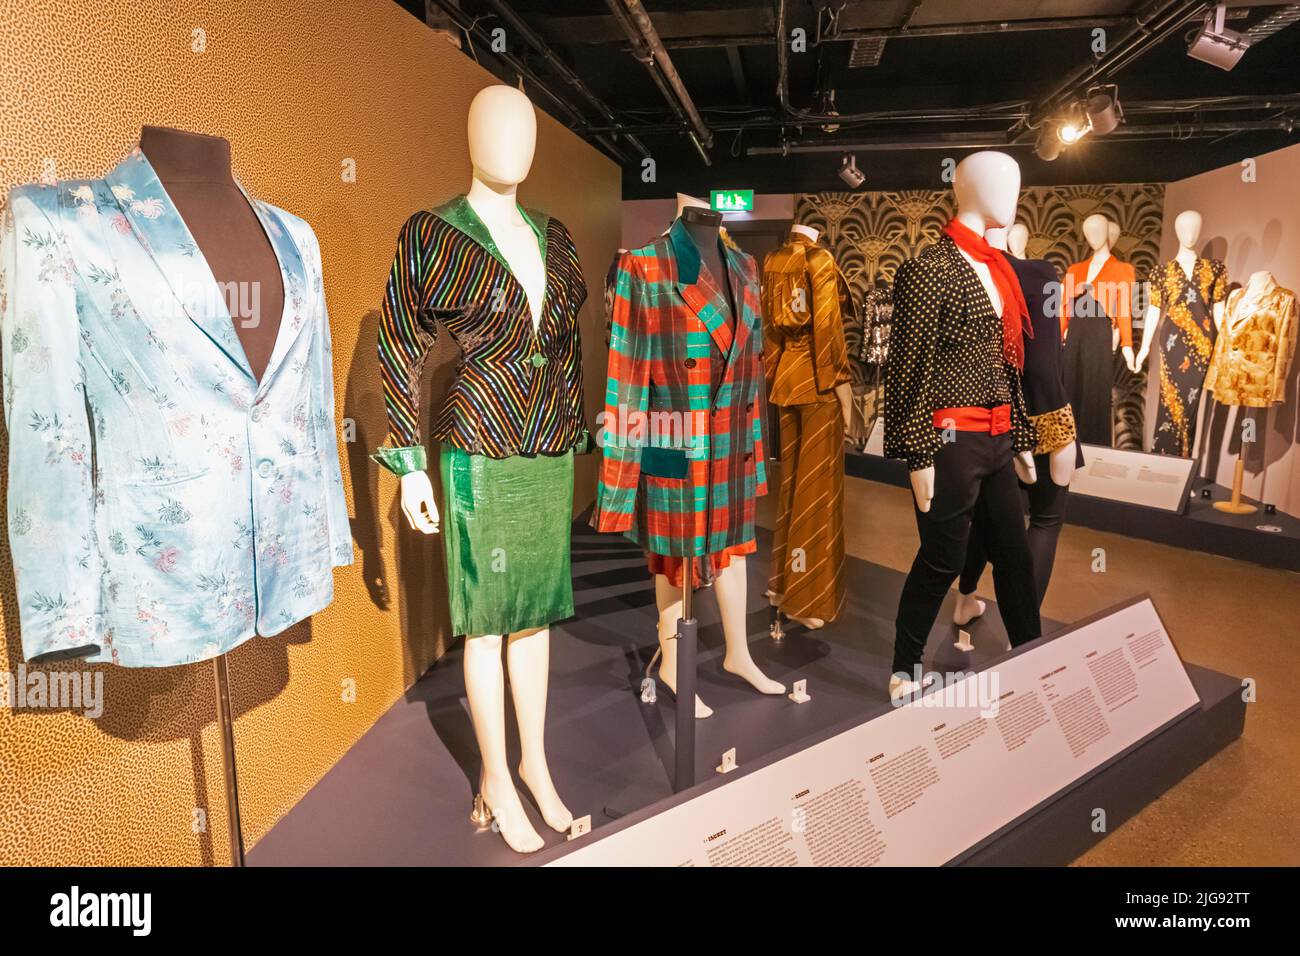 Angleterre, Londres, Southwark, Bermondsey, Musée de la mode et du textile, exposition des vêtements pour hommes et femmes des années 1970 Banque D'Images